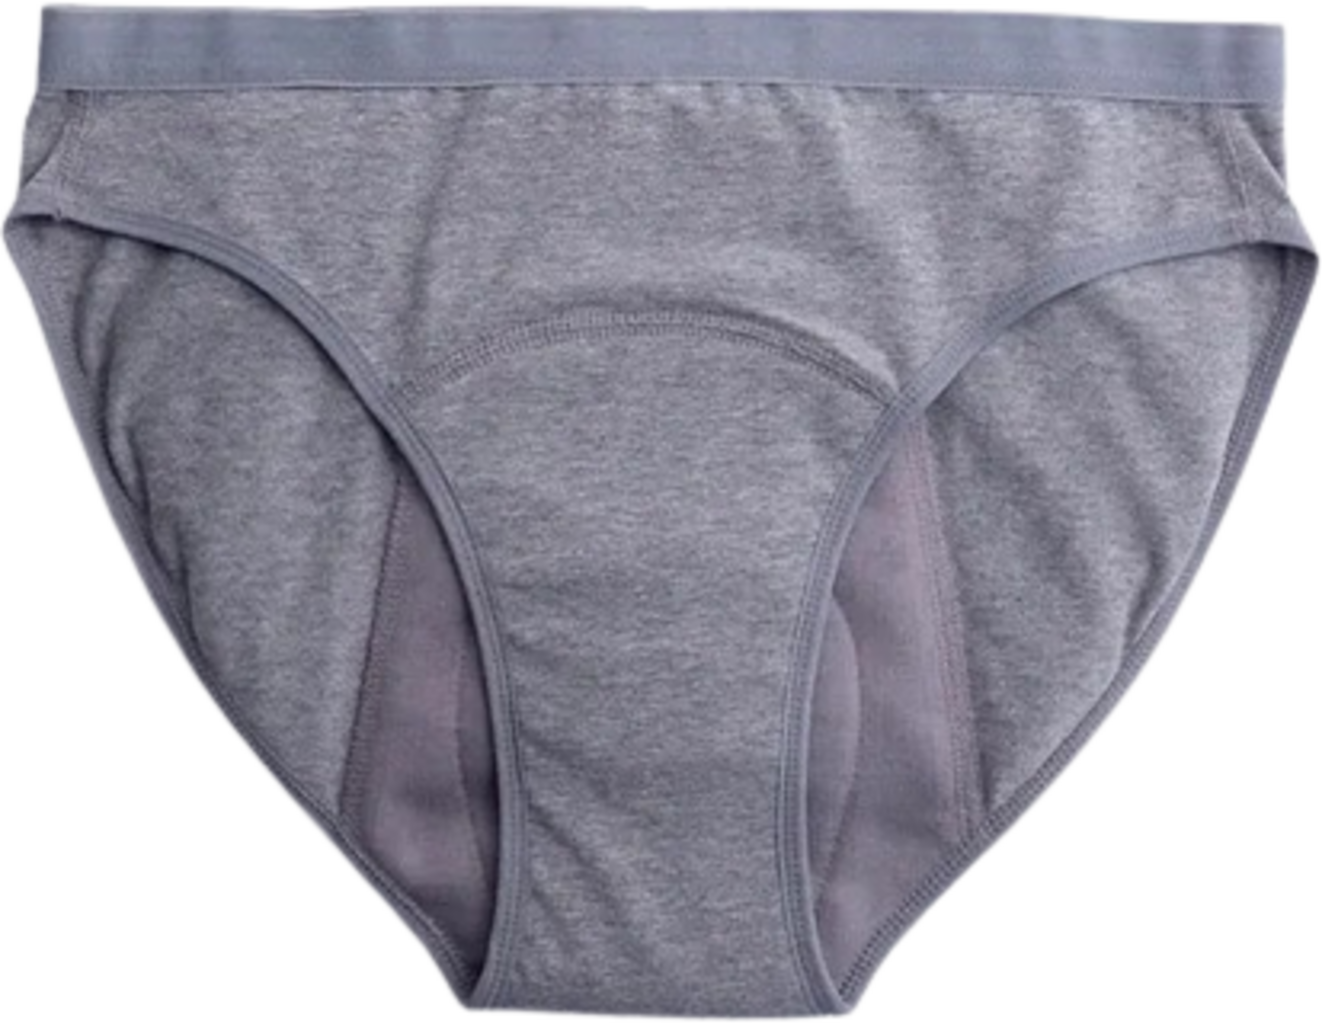 Imse Period Underwear Heavy Flow - Black - Ecco Verde Online Shop